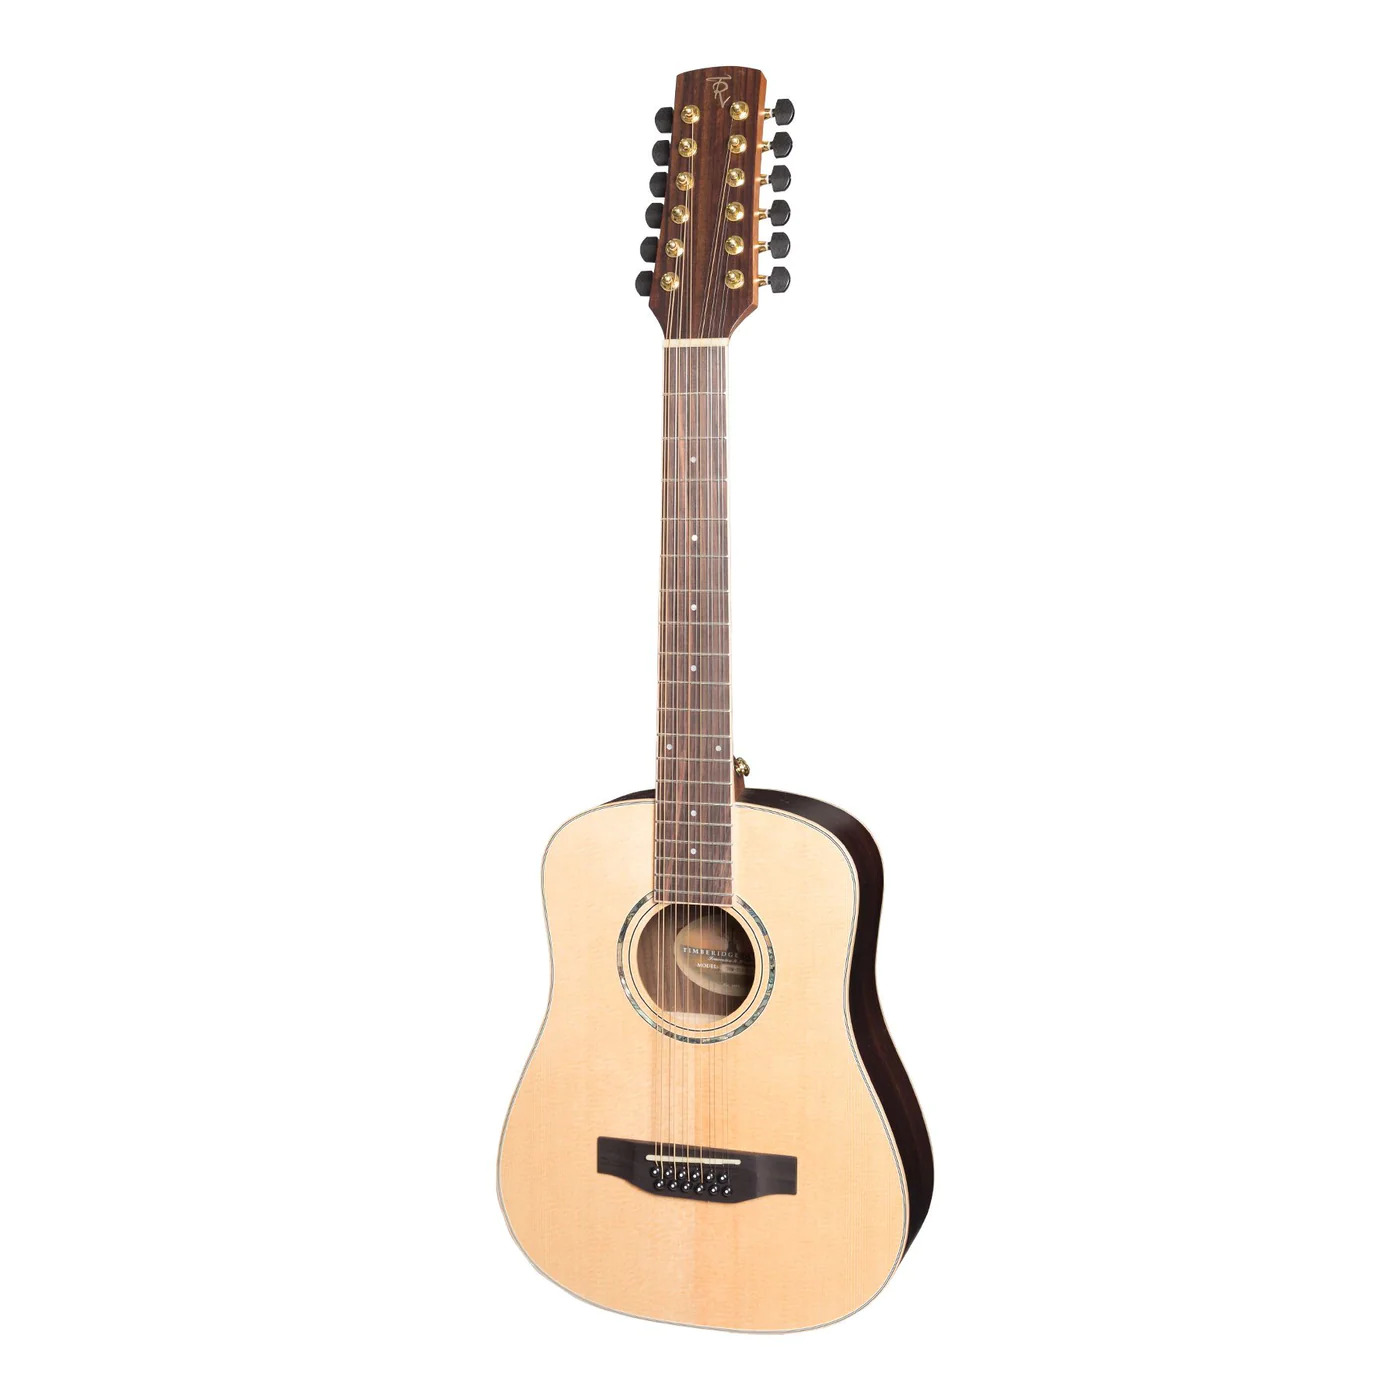 Timberidge 3 Series 12 String Mini Acoustic Guitar